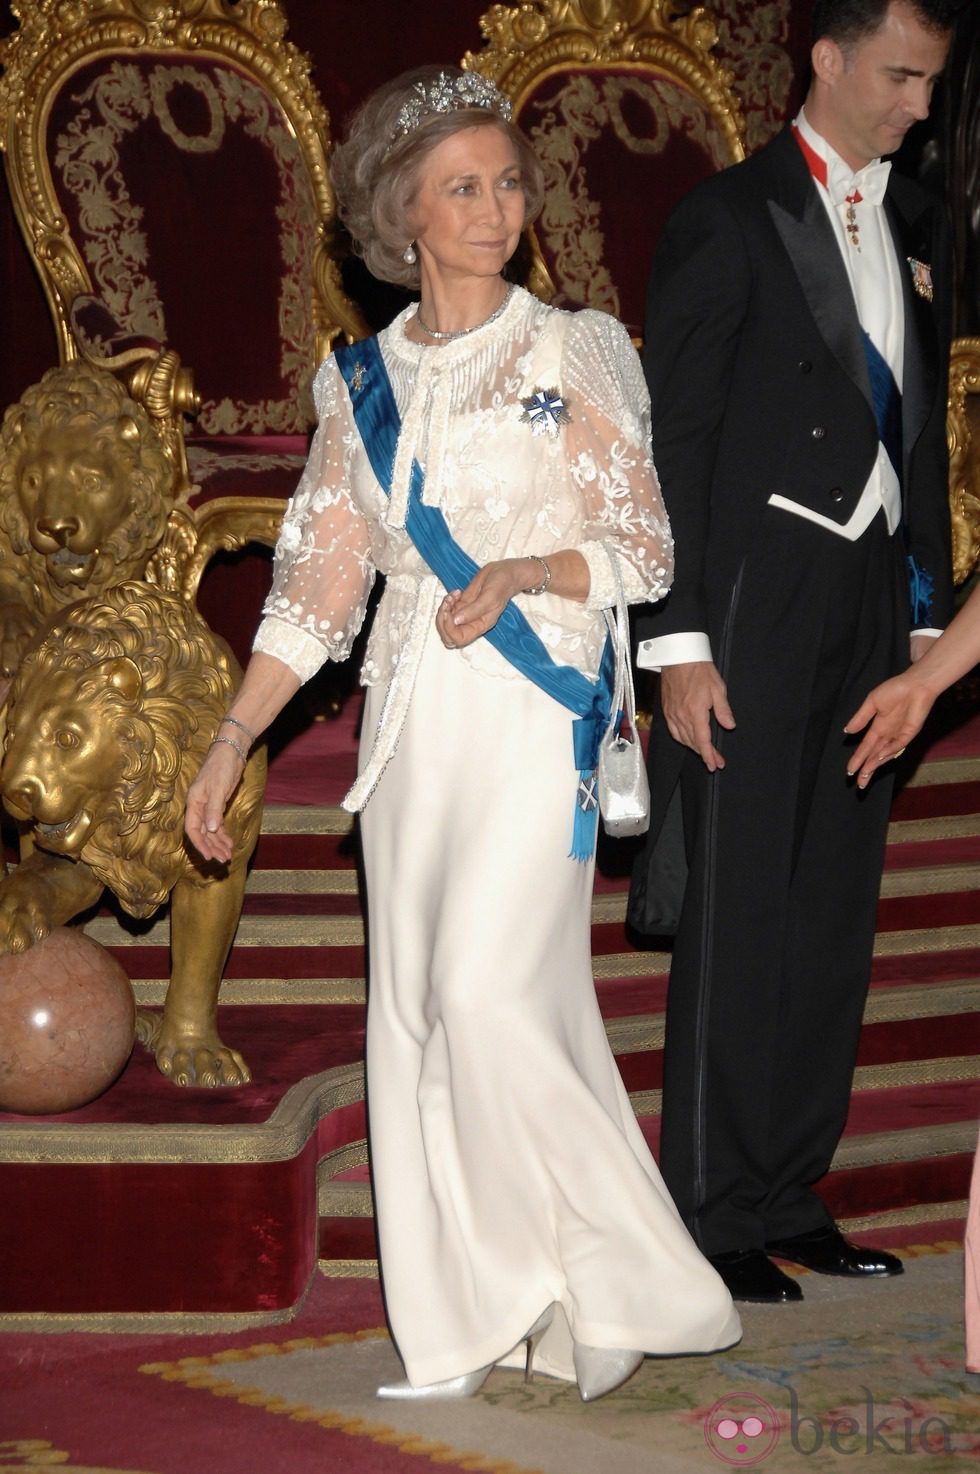 Look de la reina Sofía con vestido de gala largo en color blanco roto y mangas transparentes con detalles florales en relieve